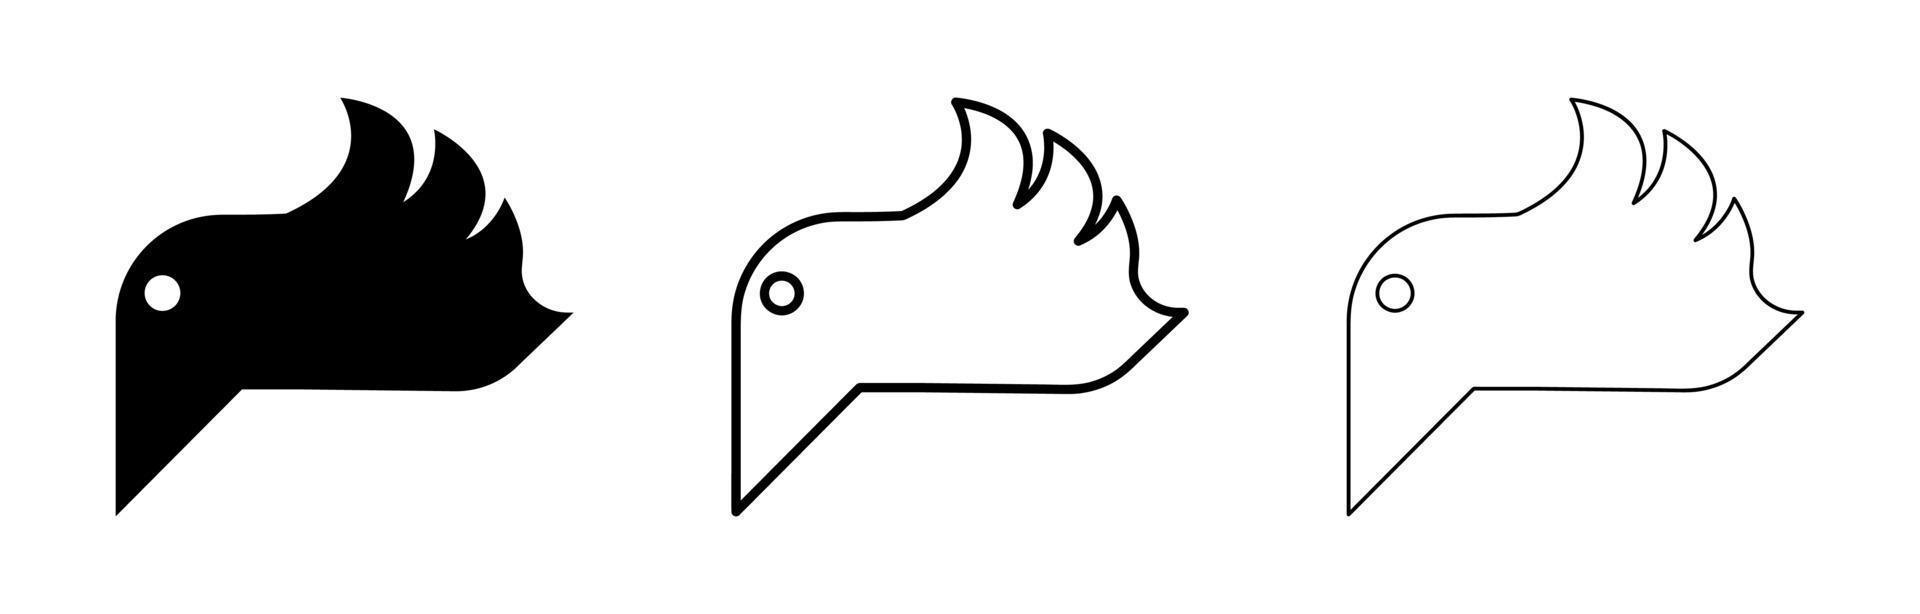 diseño de logo de pájaro volador en el aire. pájaro simple con alas. dibujos de pájaros en diferentes grosores. diseño de logotipo moderno. vector